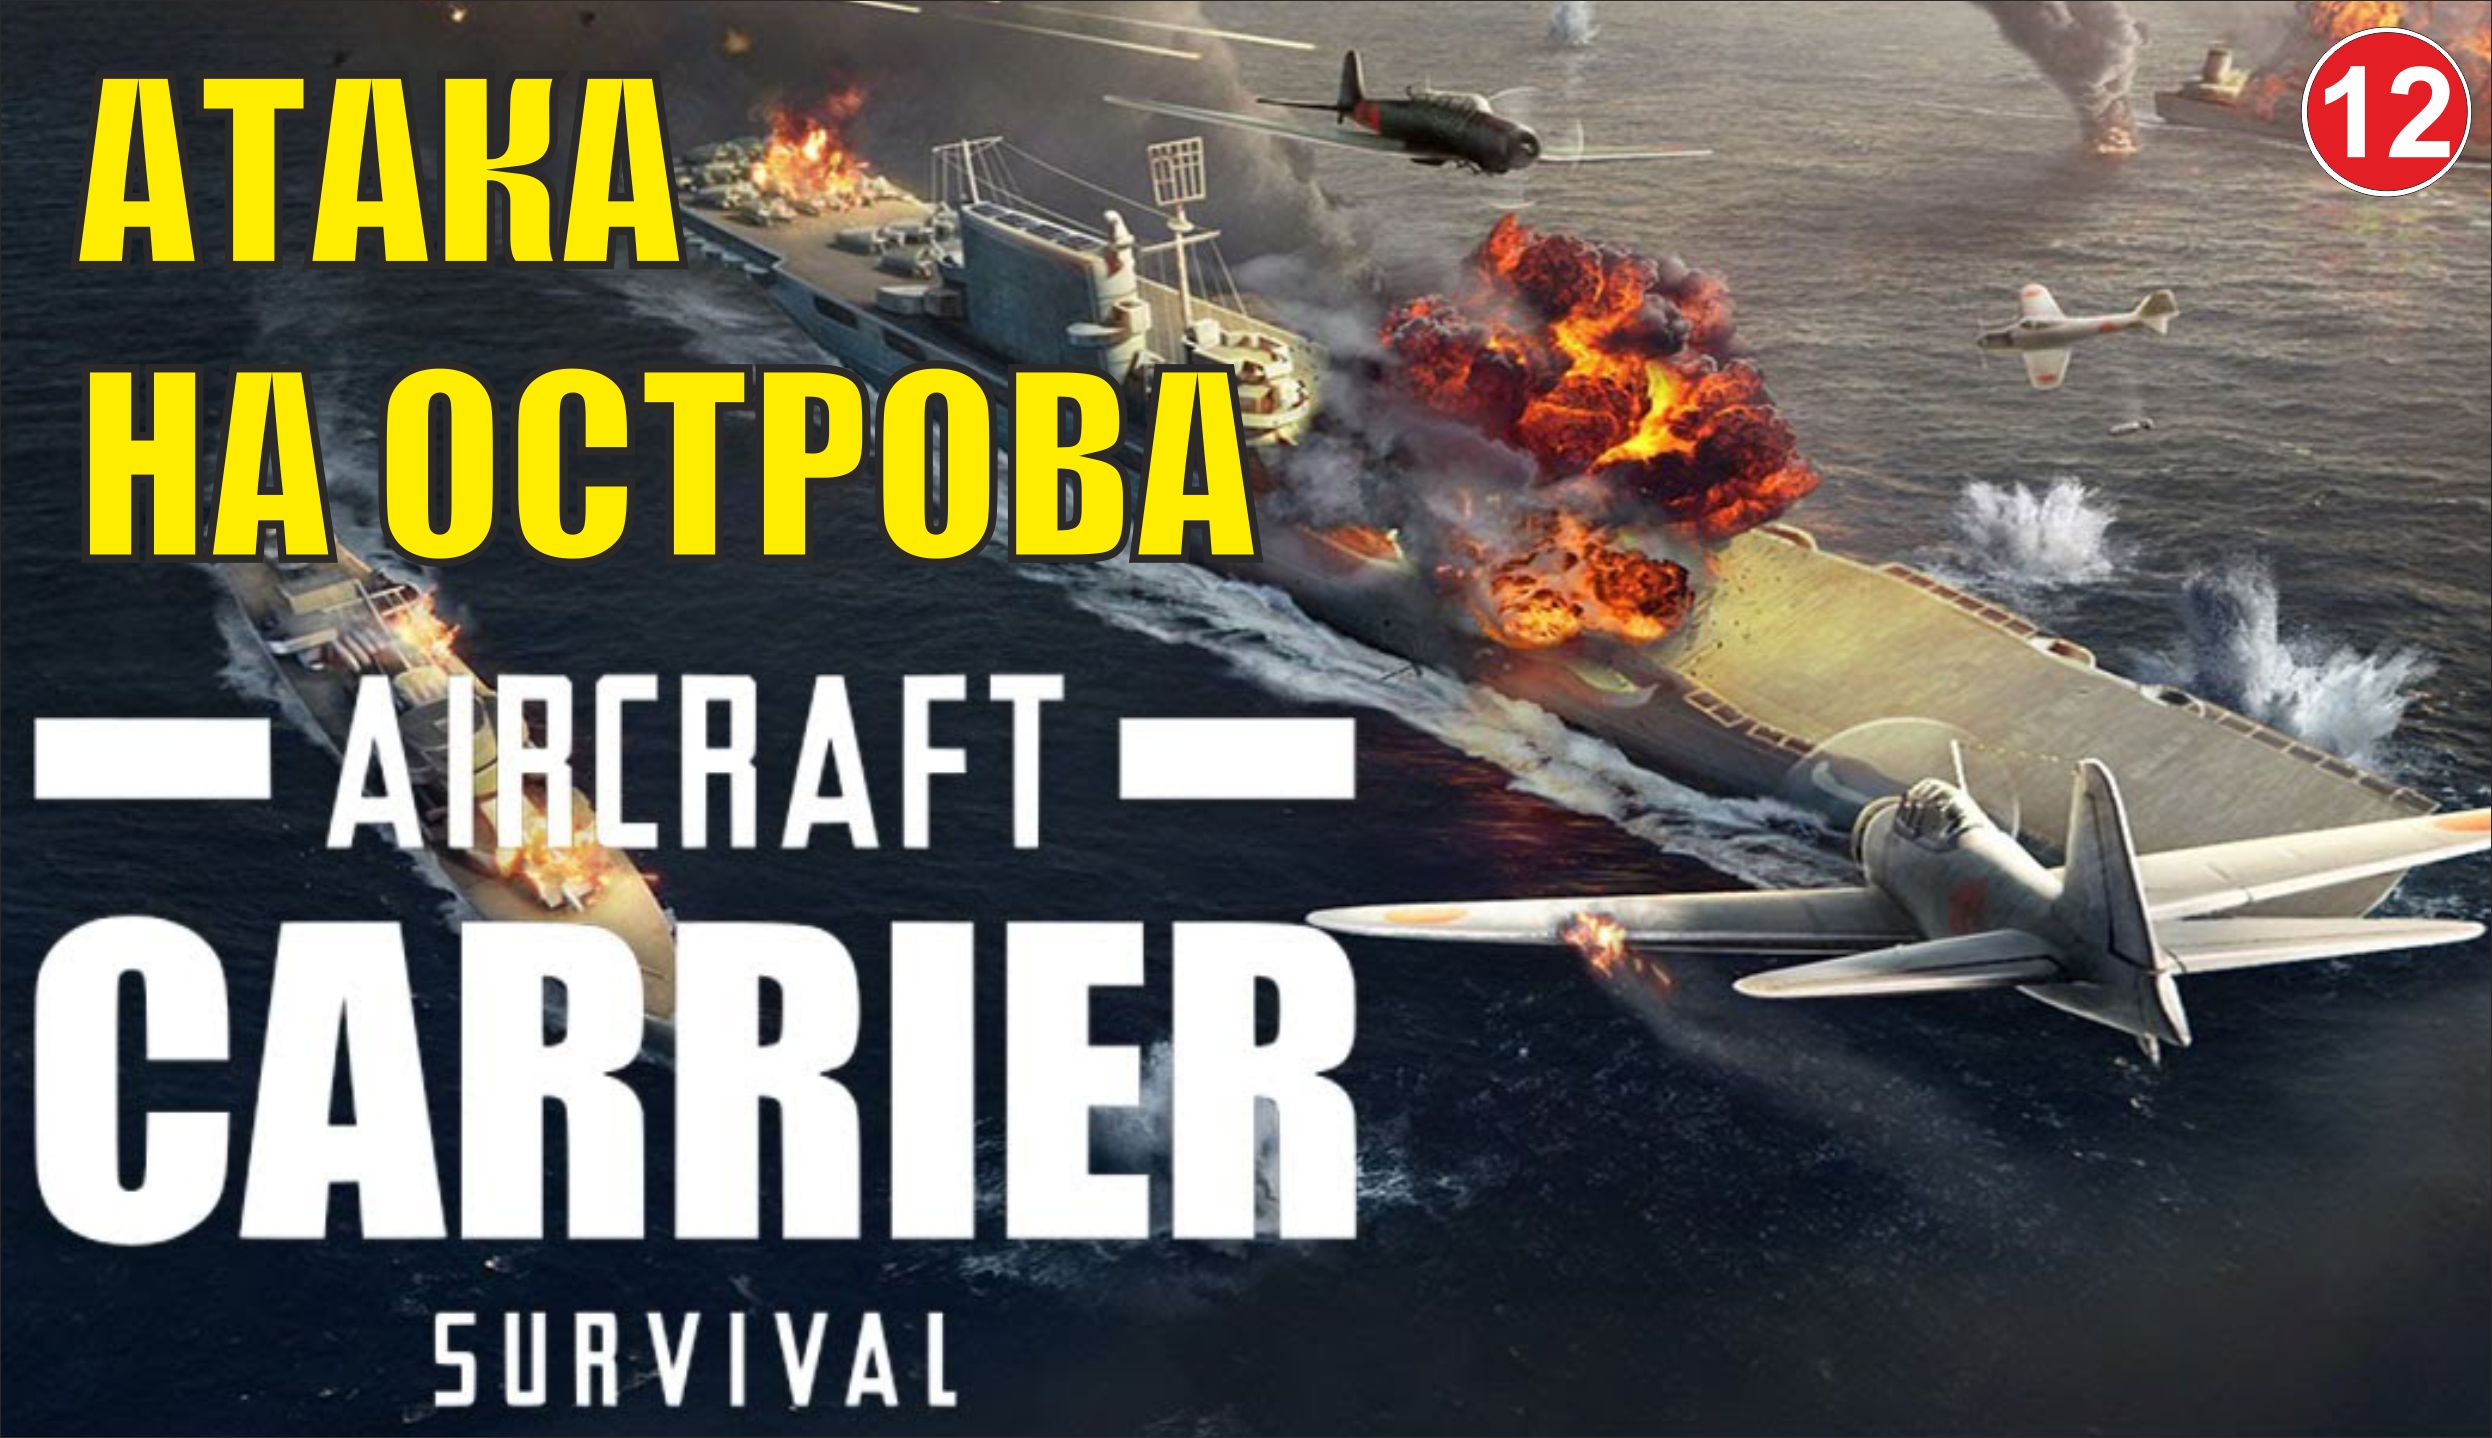 Aircraft Carrier Survival - Атака на острова